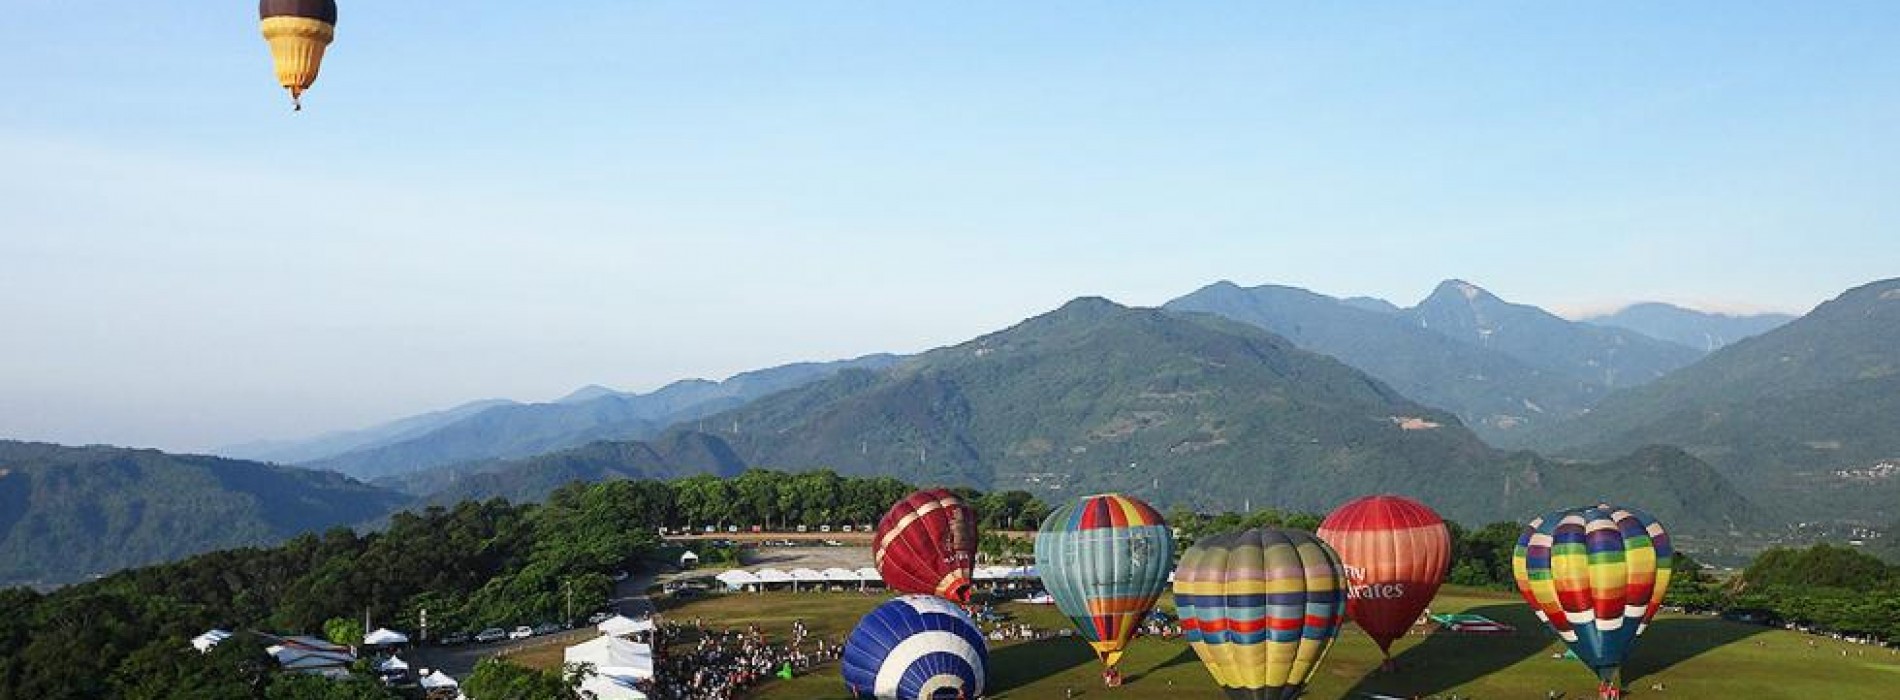 Visit the Taiwan Hot Air Balloon Festival